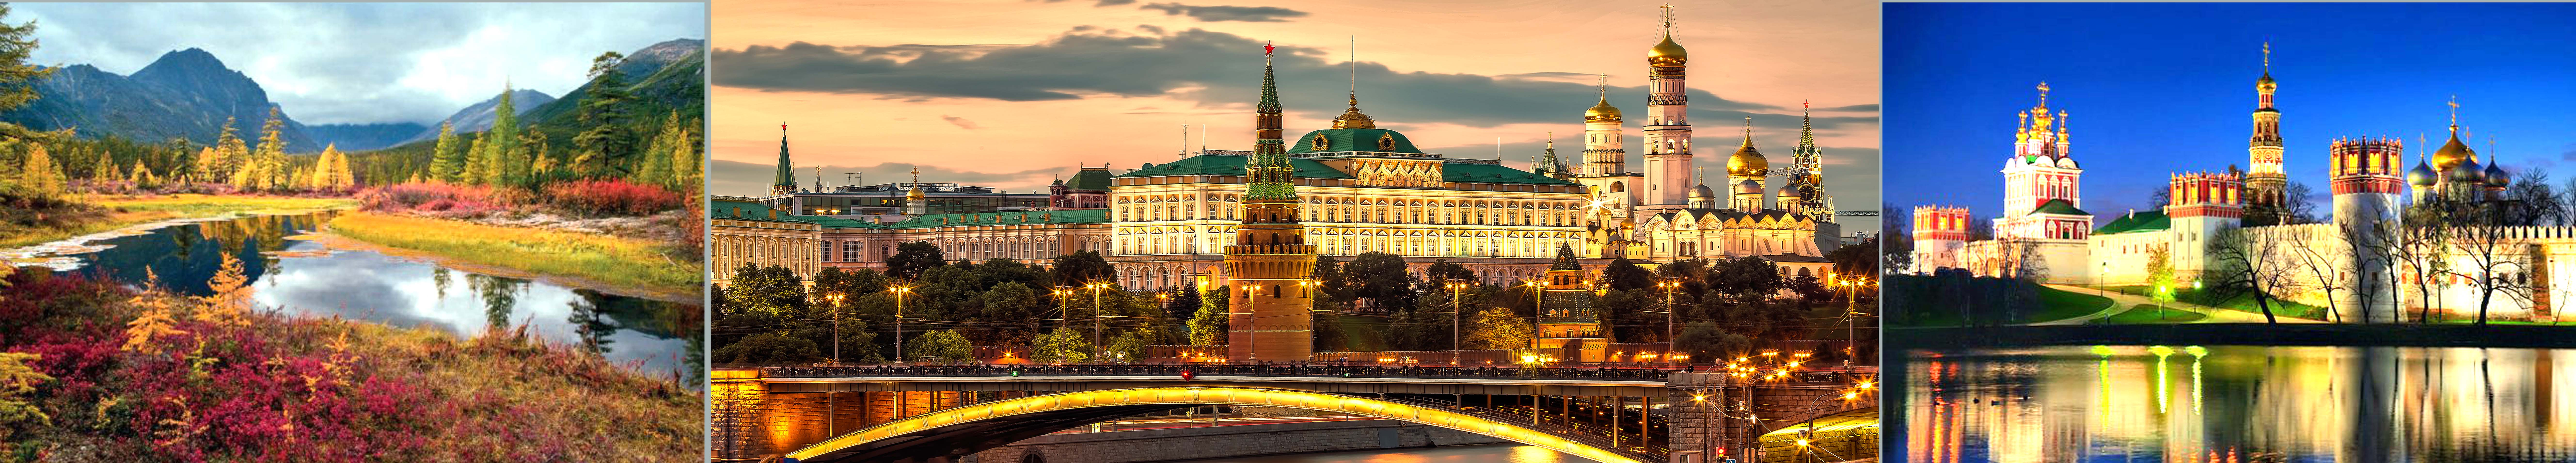 Russia Moskow. Kremlin embankment - Russian, Turkish, Azerbaijani translations